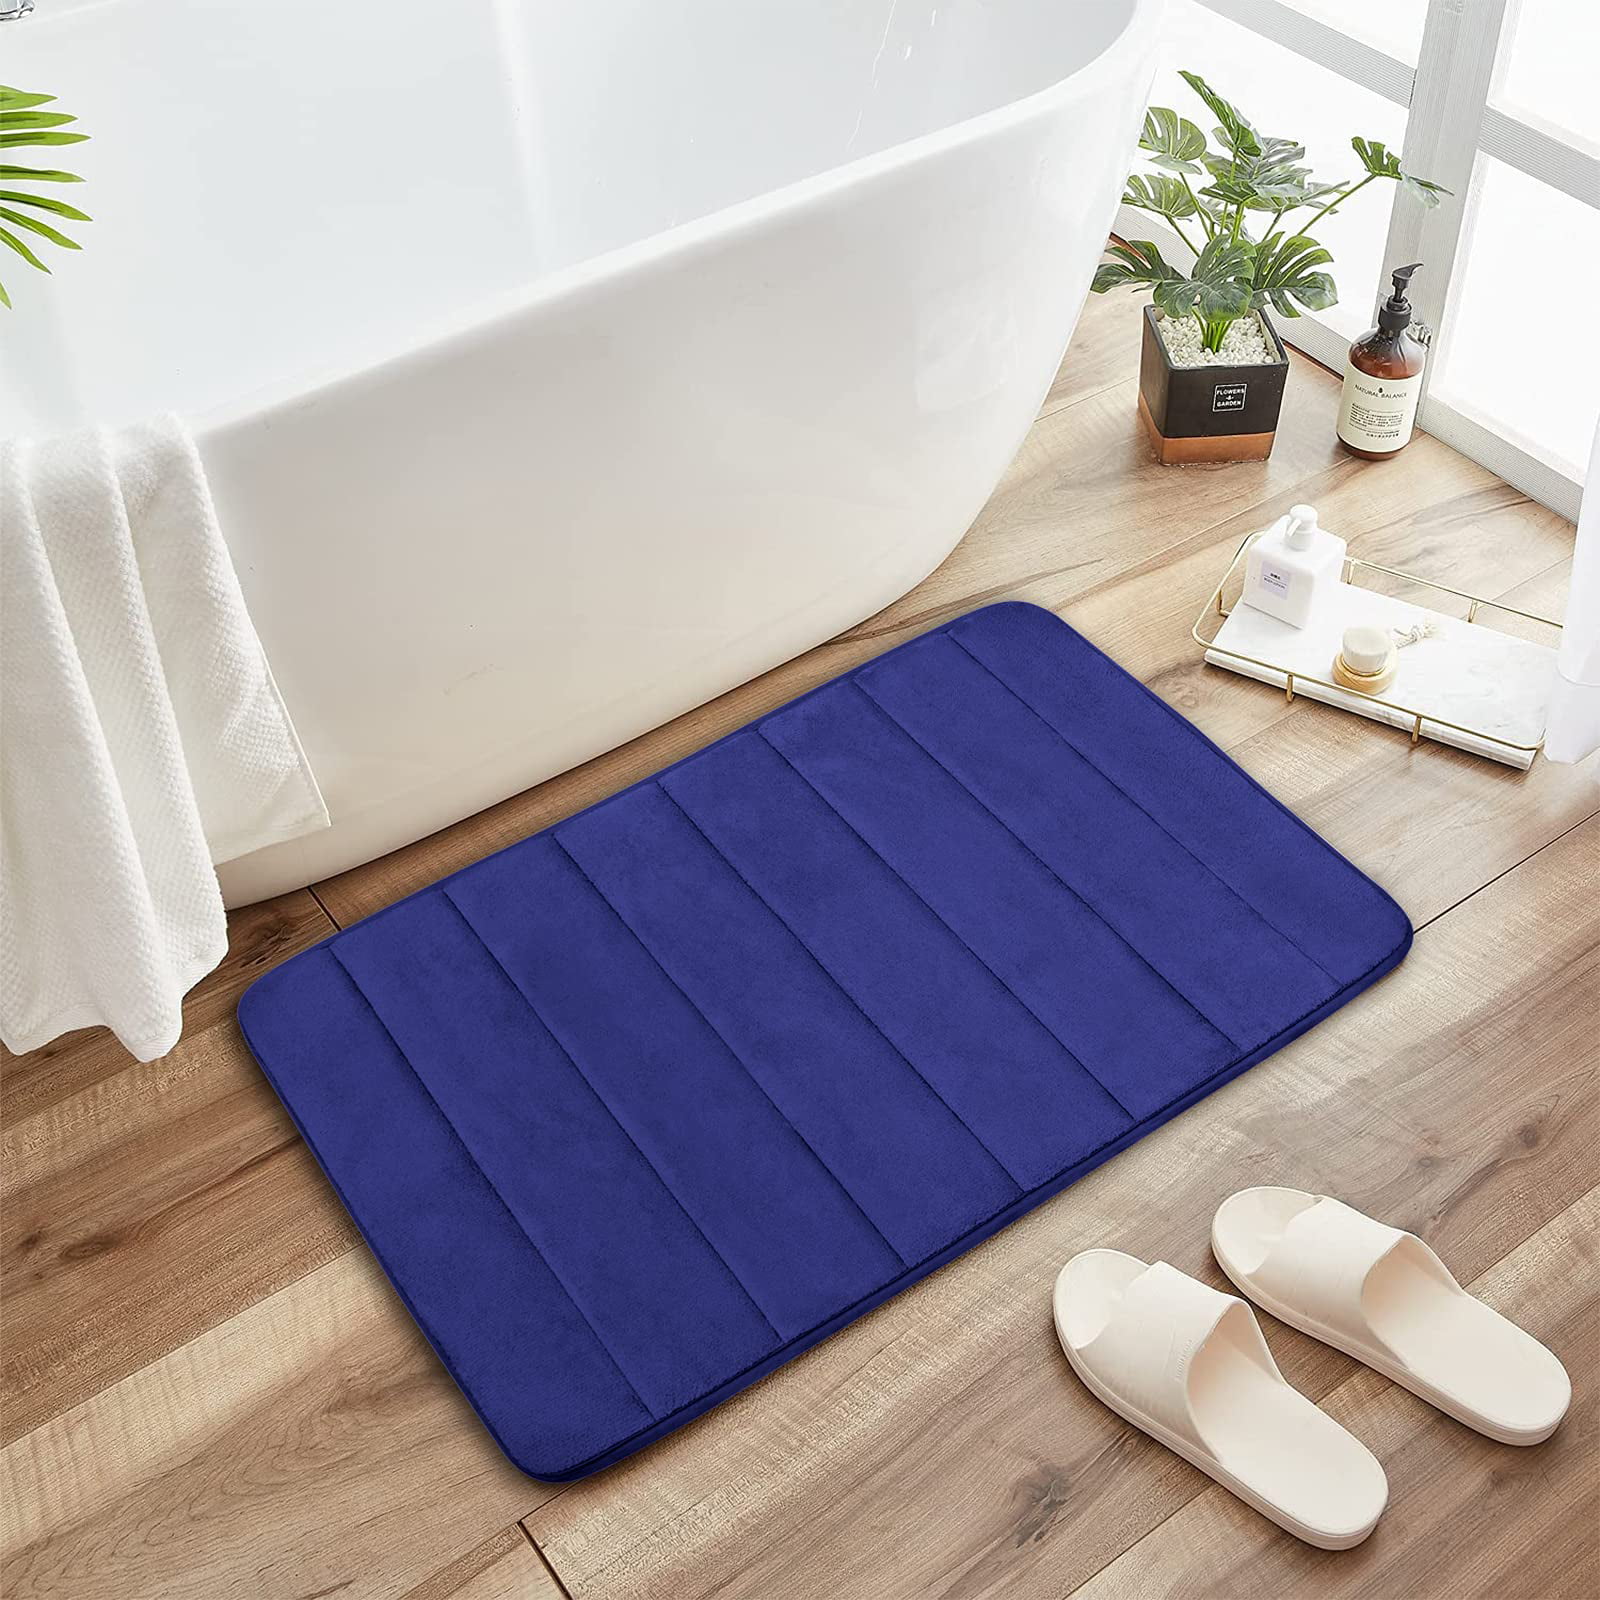 Absorbent Soft Bathroom Bedroom Floor Non-slip Mat Memory Foam Bath Shower Rug 